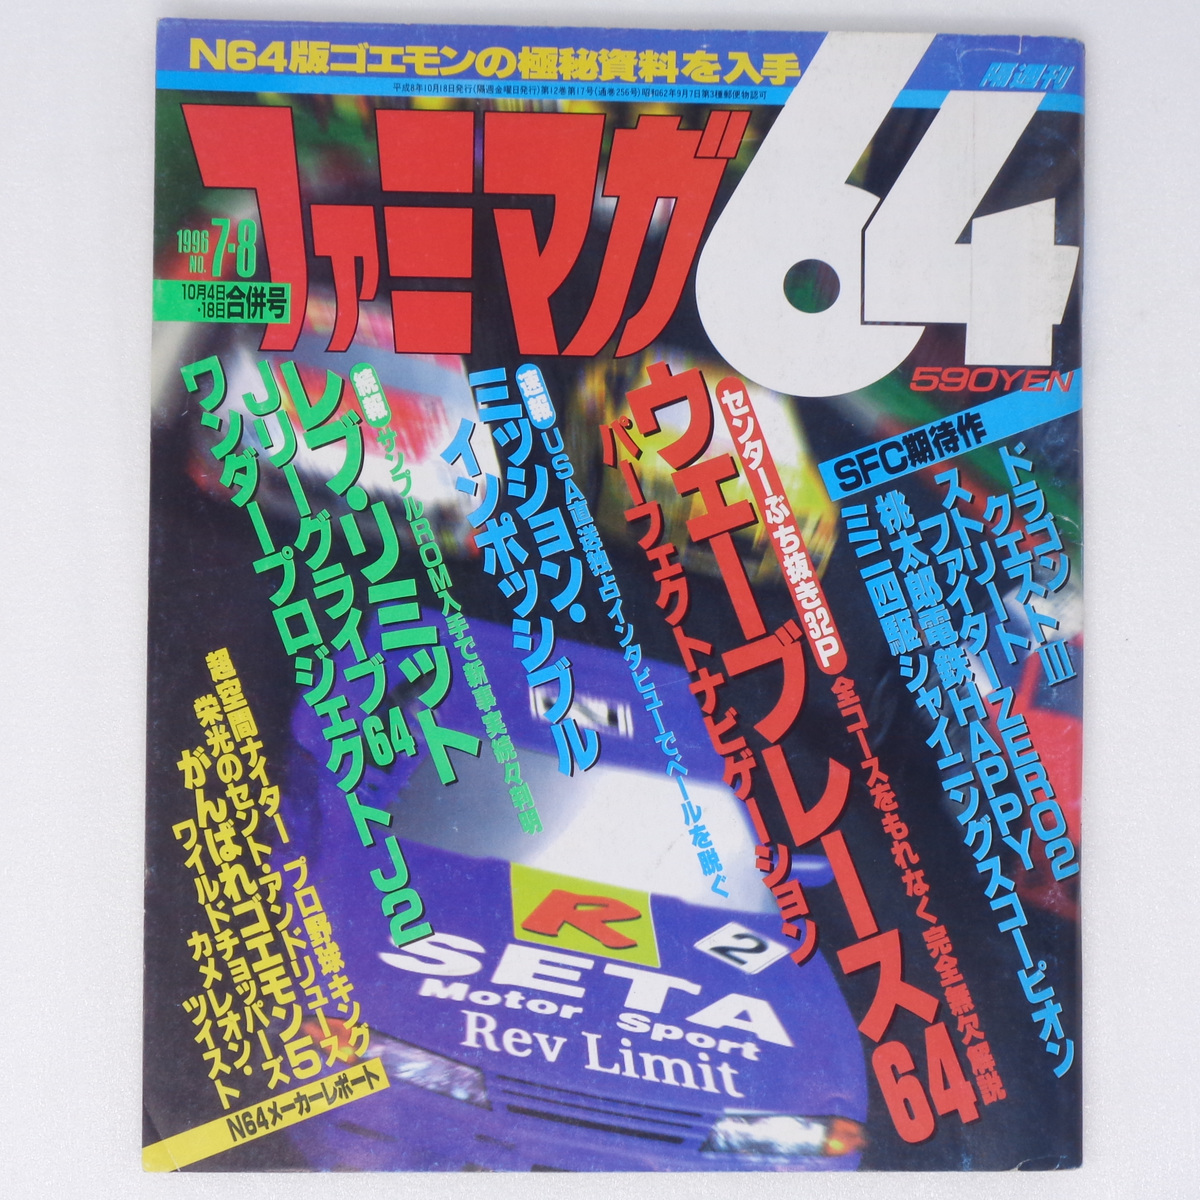 ファミマガ64 1996年10月4日・18日合併号No.7・8 /レブリミット 